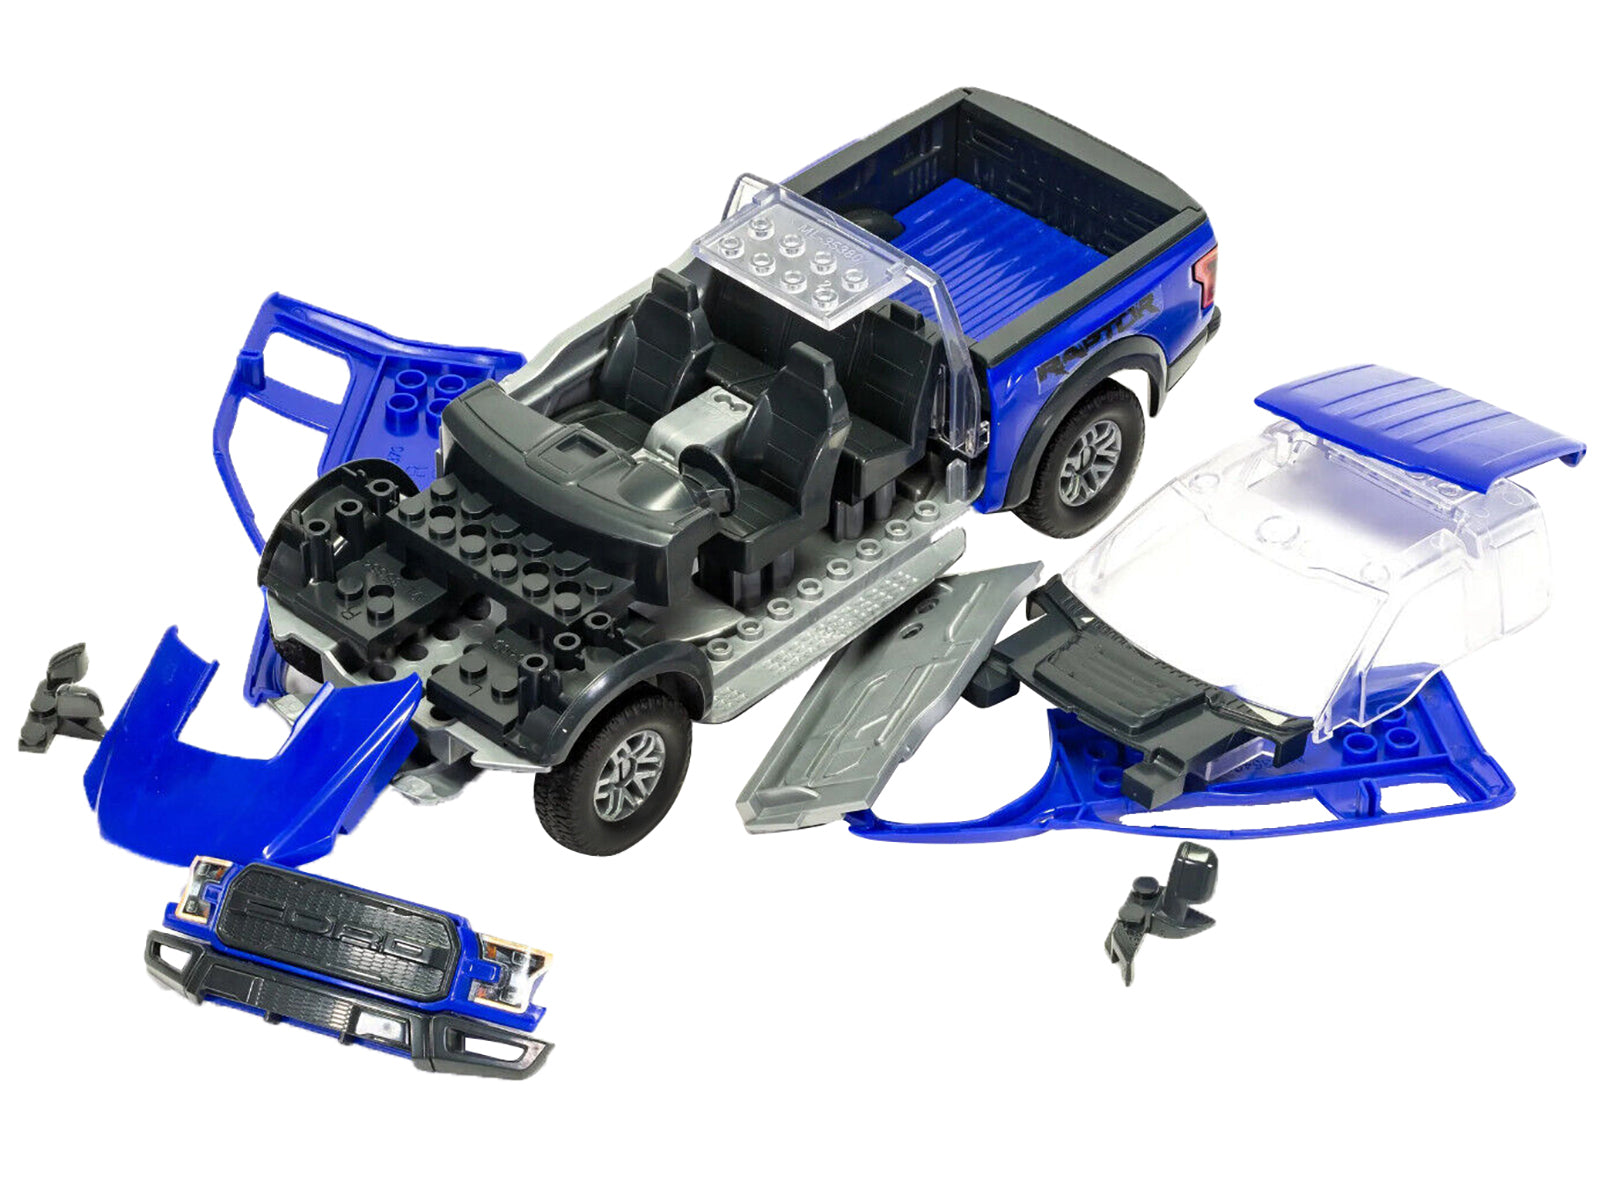 skill 1 model kit ford f-150 raptor blue snap together